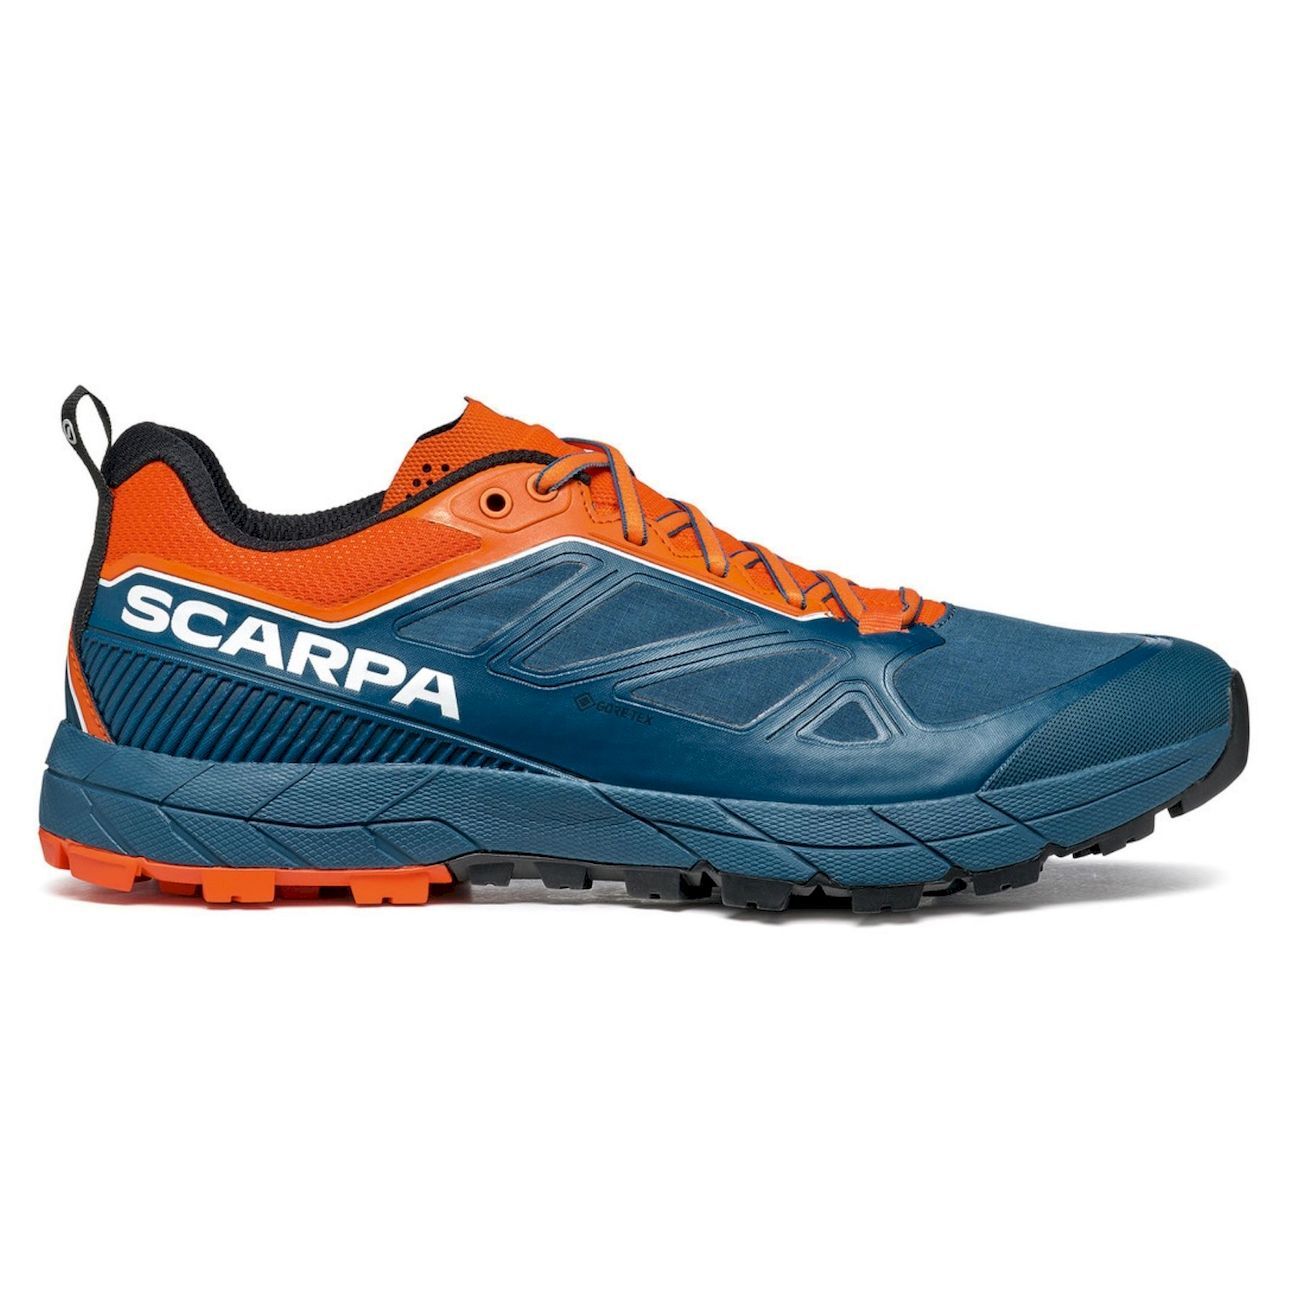 Scarpa Rapid GTX - Zapatillas de aproximación - Hombre